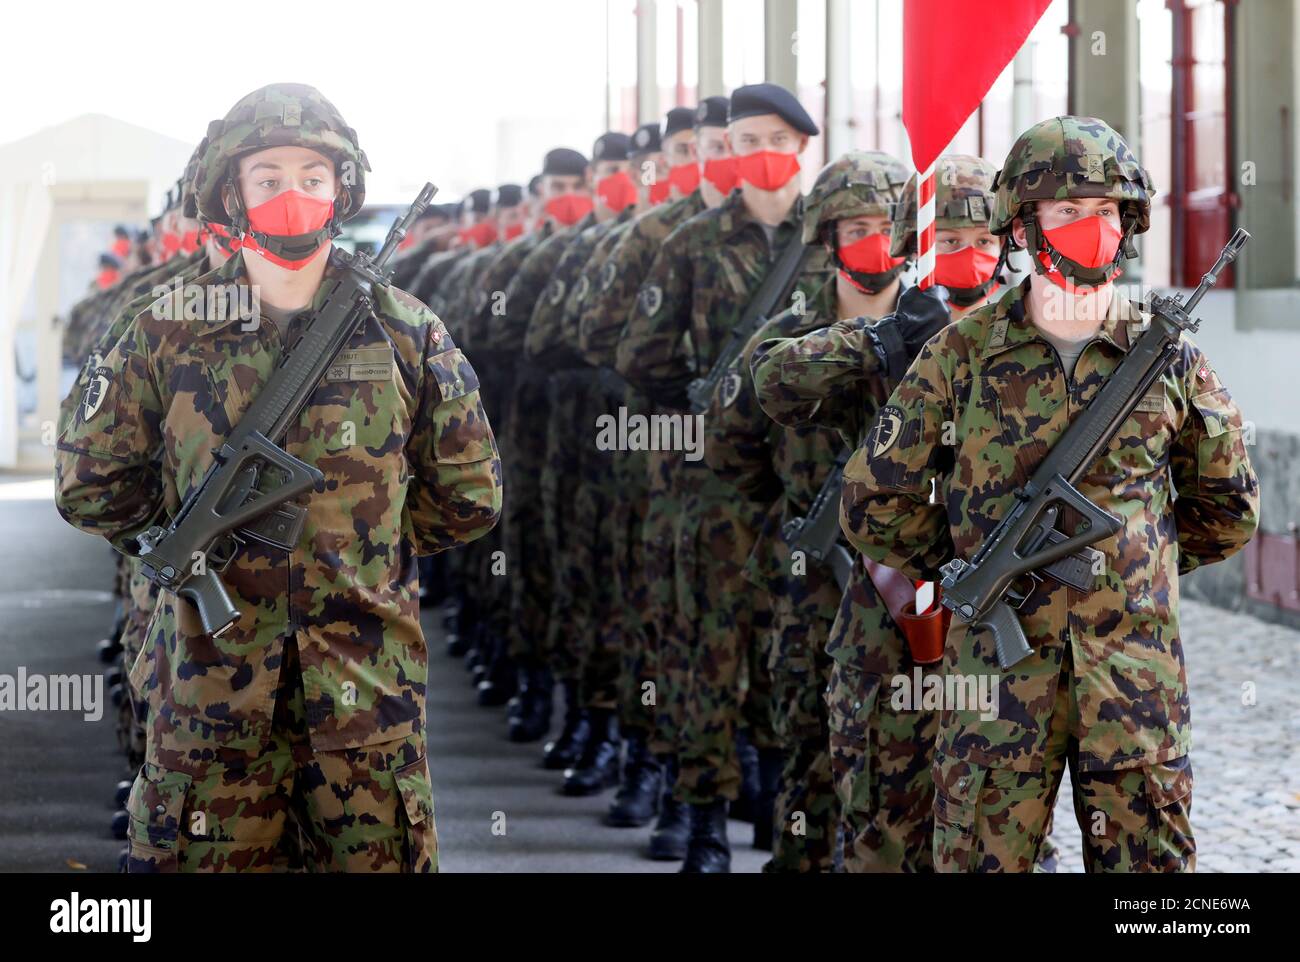 Les soldats suisses sont vus avant une cérémonie d'accueil officielle au domaine de Lohn à Kehrsatz, près de Berne, Suisse, le 18 septembre 2020. REUTERS/Denis Balibouse Banque D'Images